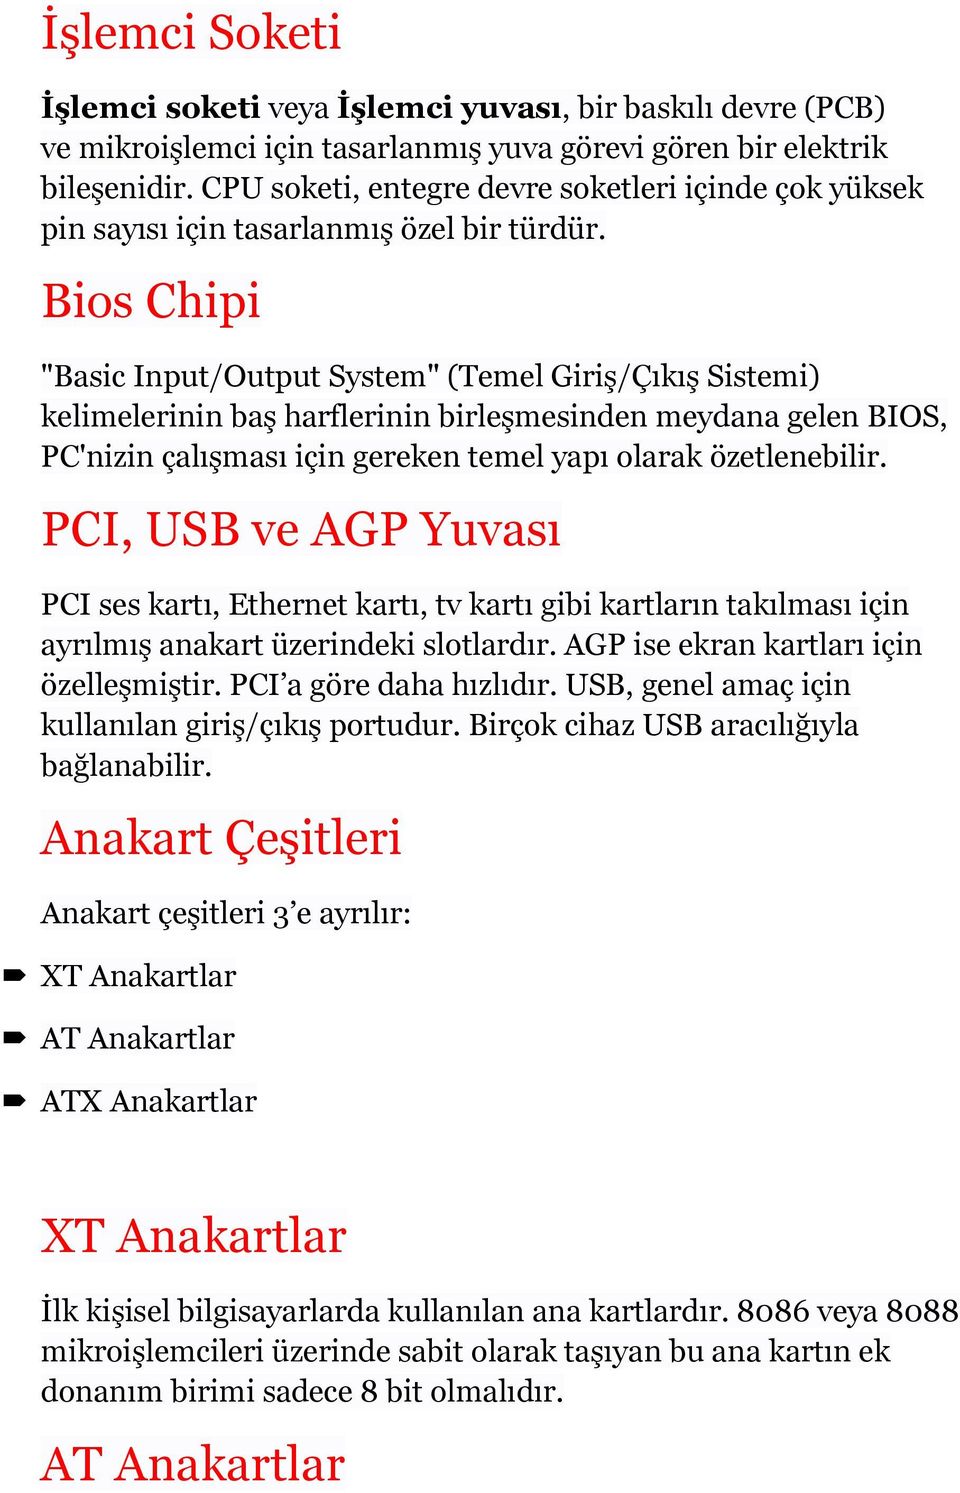 Bios Chipi "Basic Input/Output System" (Temel Giriş/Çıkış Sistemi) kelimelerinin baş harflerinin birleşmesinden meydana gelen BIOS, PC'nizin çalışması için gereken temel yapı olarak özetlenebilir.